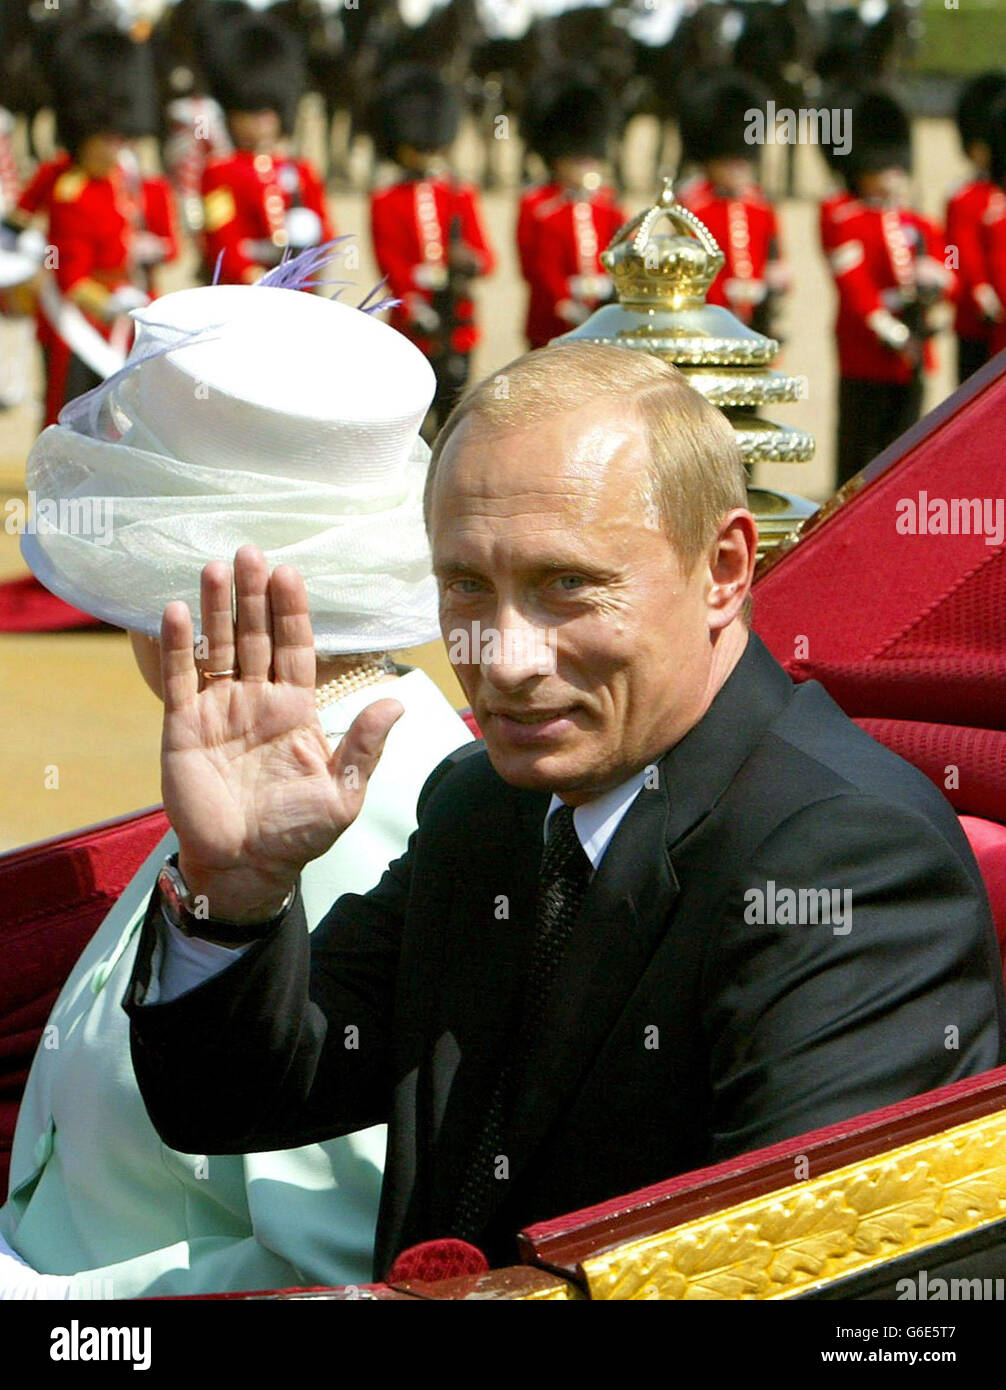 La reine Elizabeth II de Grande-Bretagne et le président russe Vladimir Poutine arrivent à la parade des gardes à cheval, à Londres, le premier jour de sa visite d'État. C'est la première visite d'État d'un dirigeant russe depuis les jours des Tsars. Banque D'Images